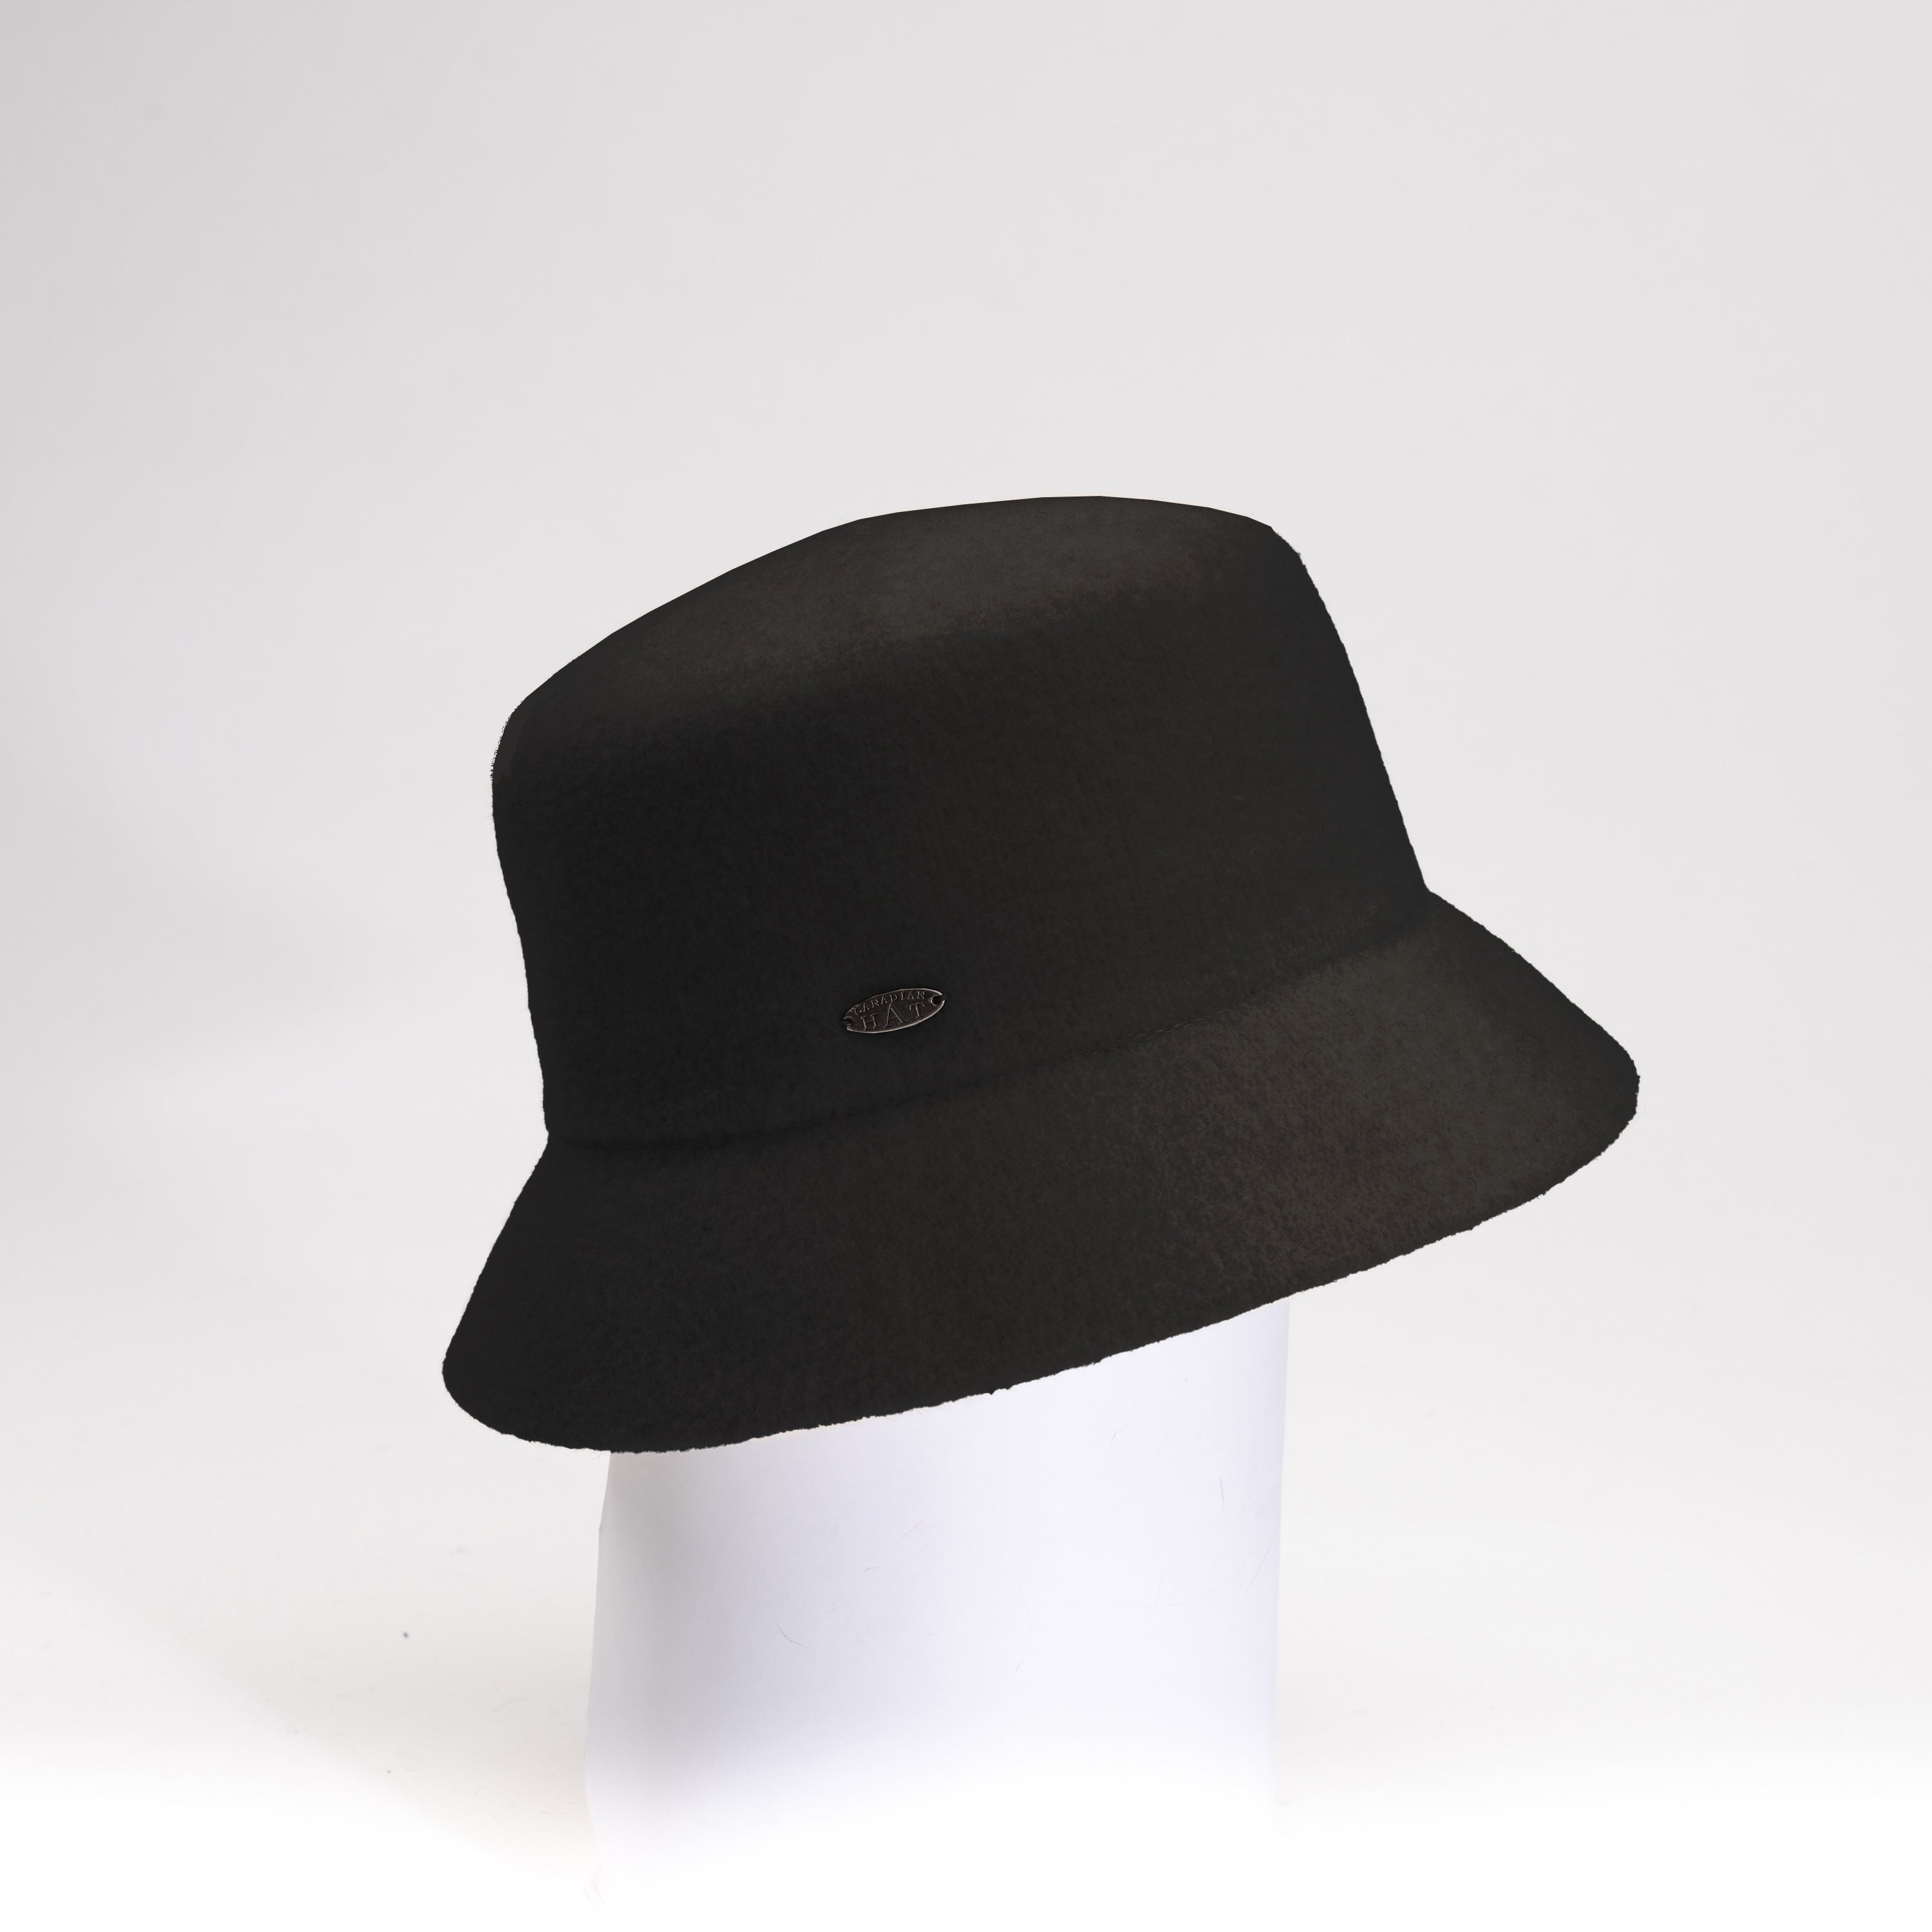 Bowen - Woolen Bucket Hat by Canadian Hat – Harricana